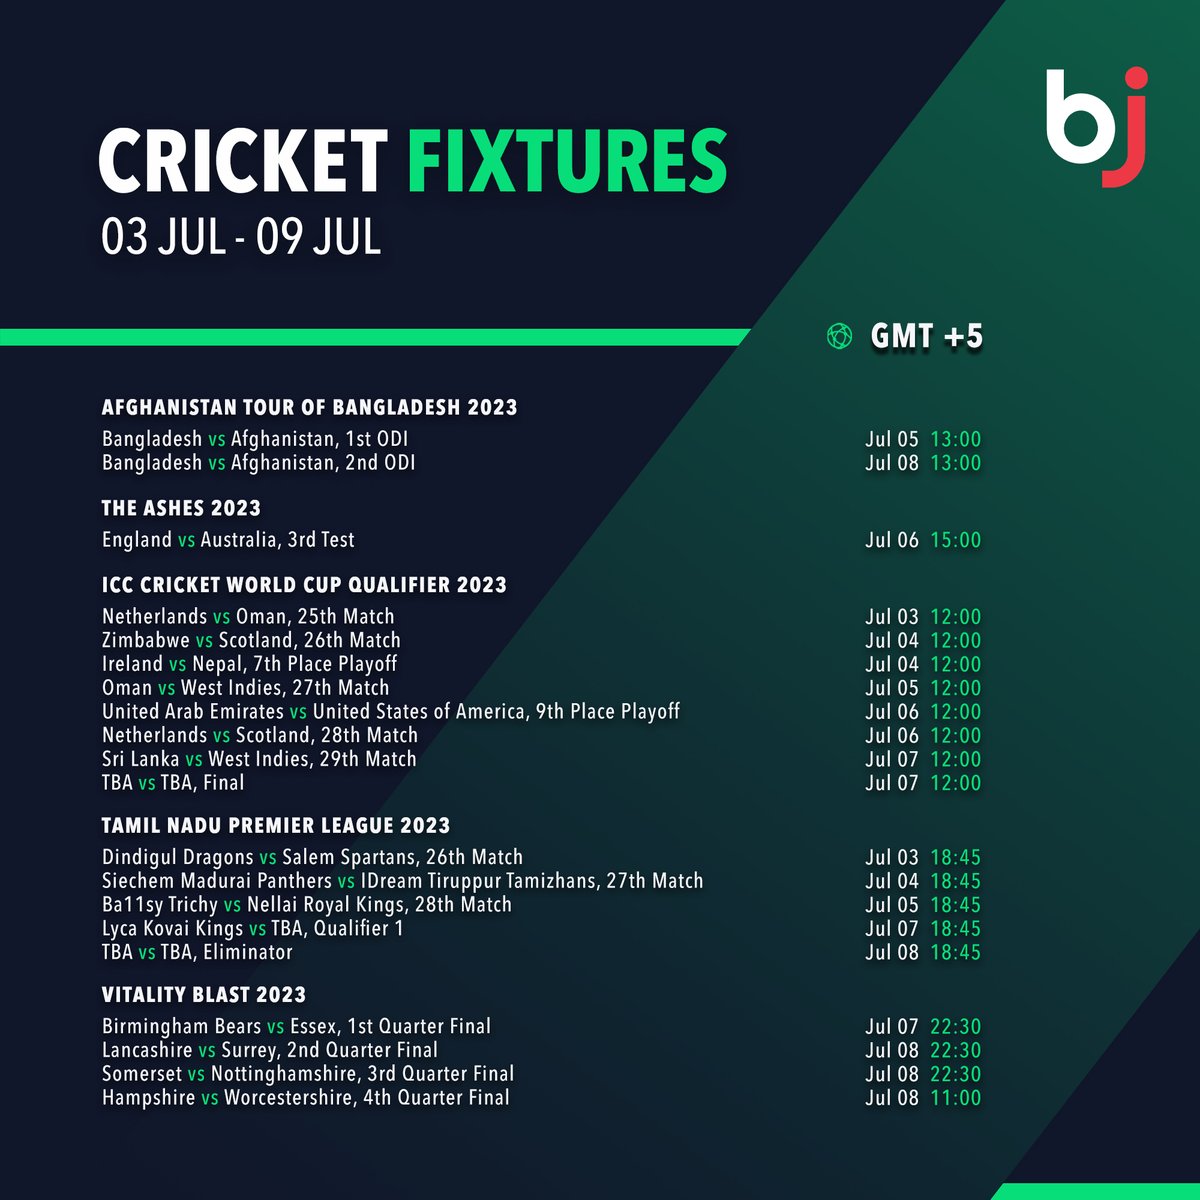 اگلے ہفتے کے تمام کرکٹ میچوں کا شیڈول ایک نظر میں صرف Baji پر دیکھیں!!

💥 ابھی Baji ممبر کے طور پر رجسٹر ہوں!!💥baji.social/bj/fbpkr4

#Baji #BJ #Sports #Cricket #Schedule #CricketFixture #VitalityBlast #TNPL #Ashes